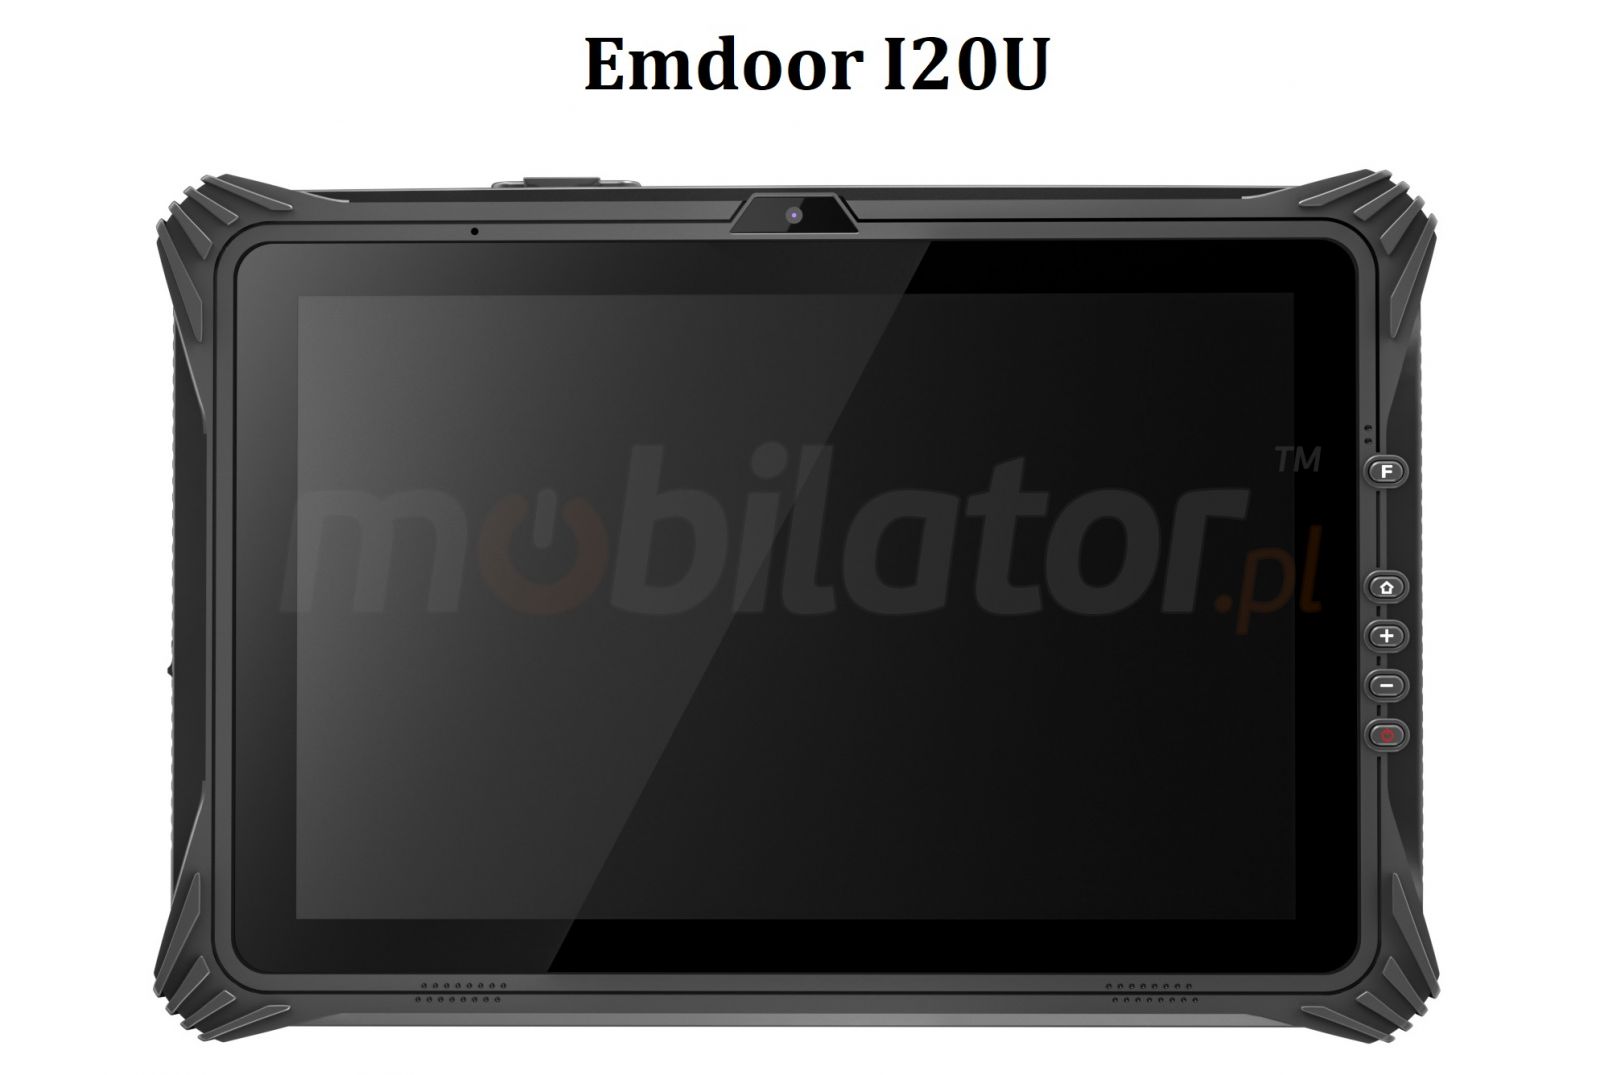 Emdoor I20U v.9 - Odporny na upadki 12.2 calowy tablet z Windows 10 IoT, BT 4.2, czytnikiem kodw 1D, NFC , 4G, pamici 8GB RAM, 128GB ROM